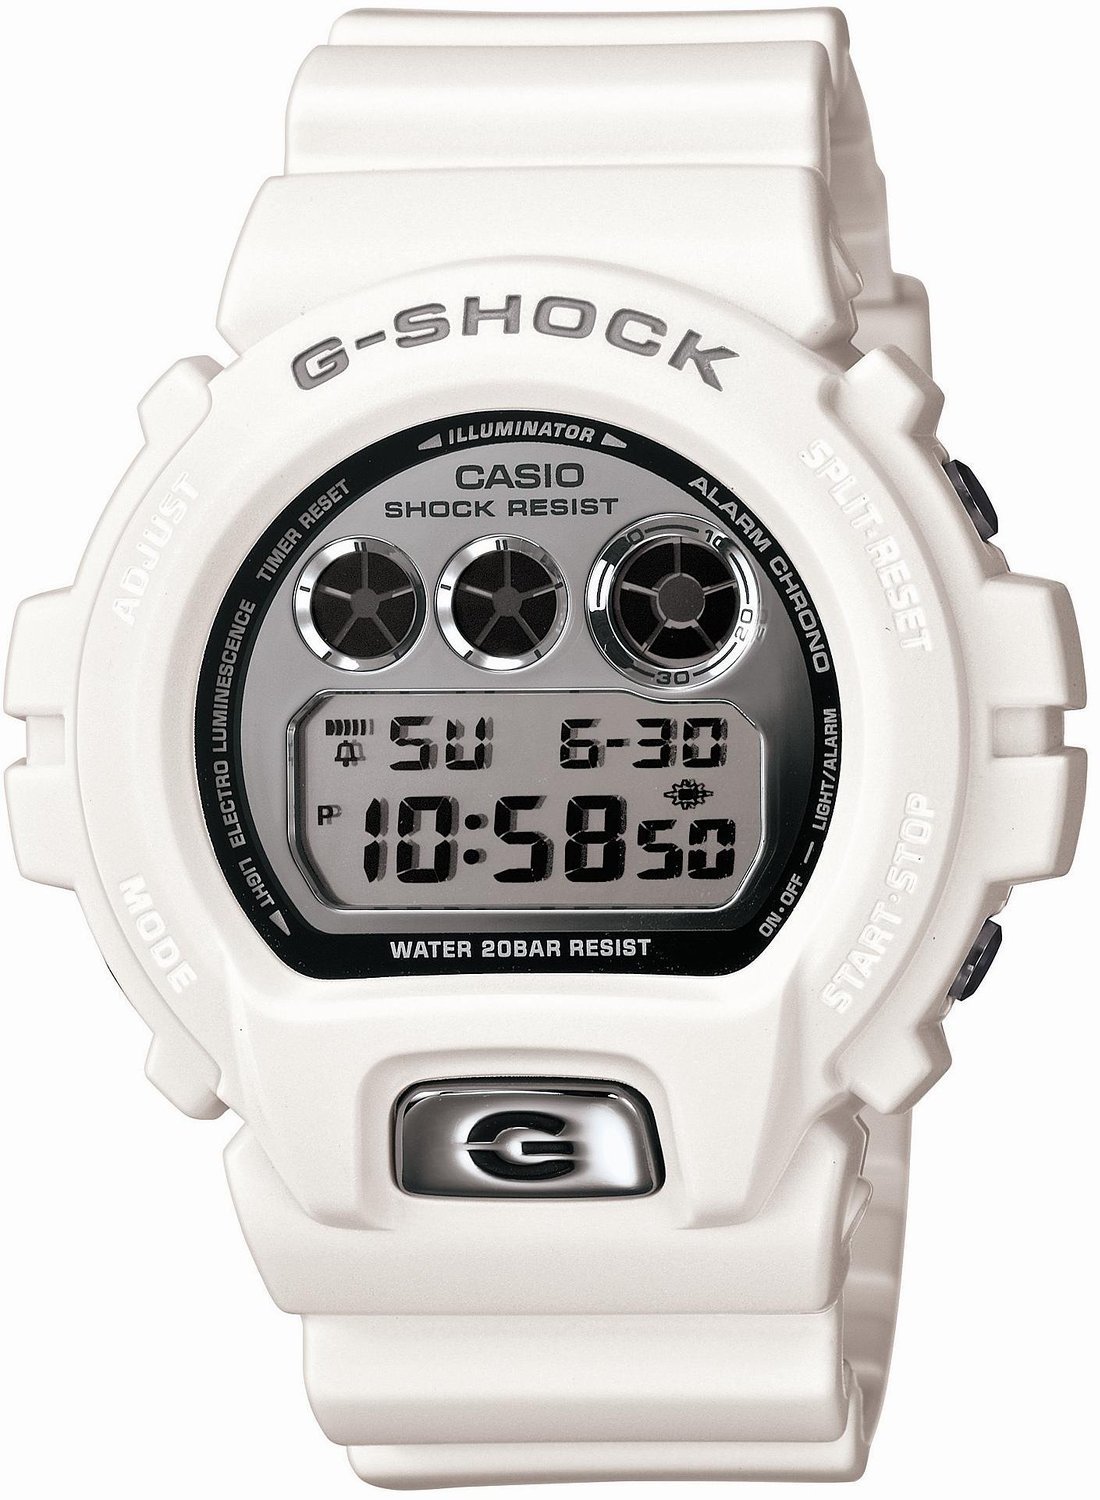 【クリックで詳細表示】[カシオ]CASIO 腕時計 G-SHOCK ジーショック Metallic Dial Series DW-6900MR-7JF メンズ